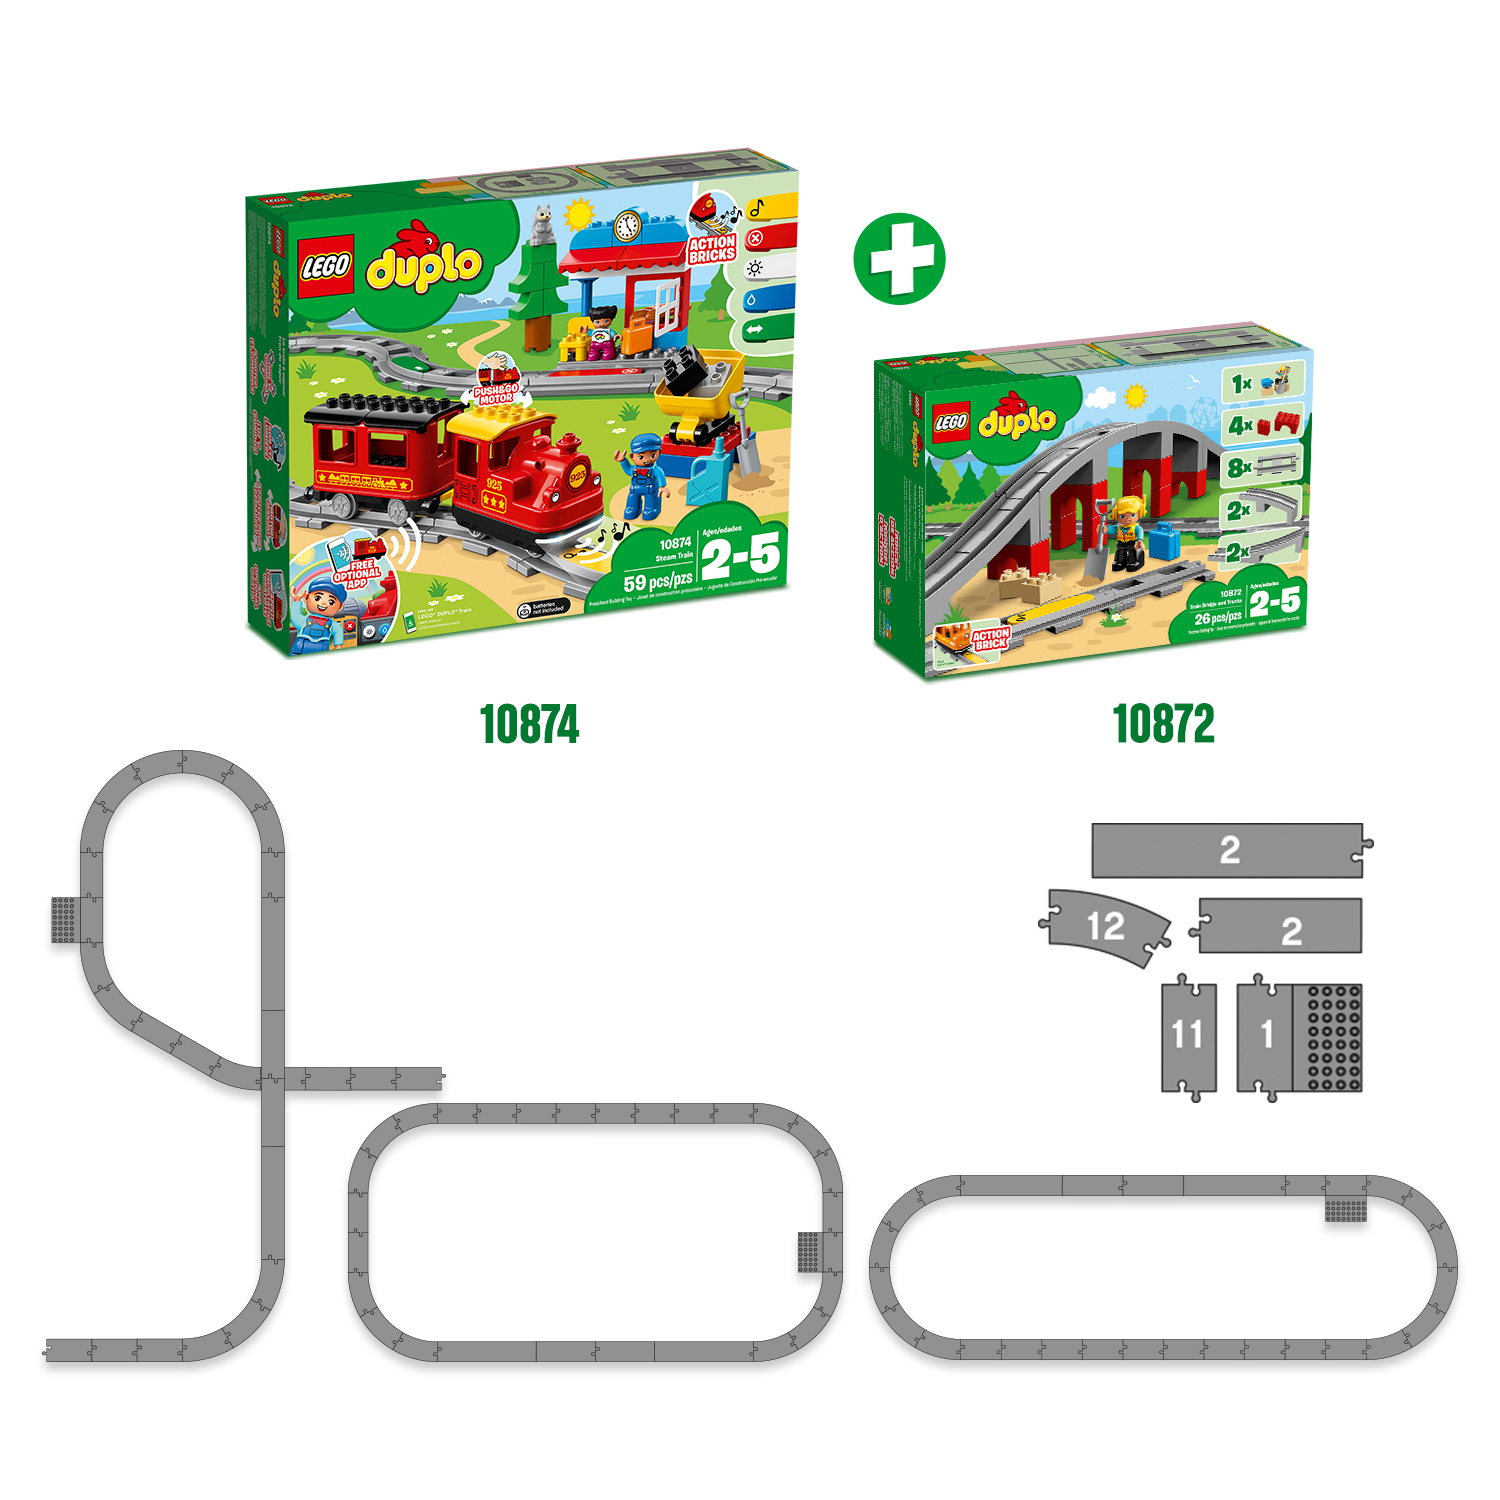 Lego duplo 10872 ponte e binari ferroviari, giochi per bambini in età prescolare con mattoncino sonoro, giocattoli educativi - LEGO DUPLO, Lego